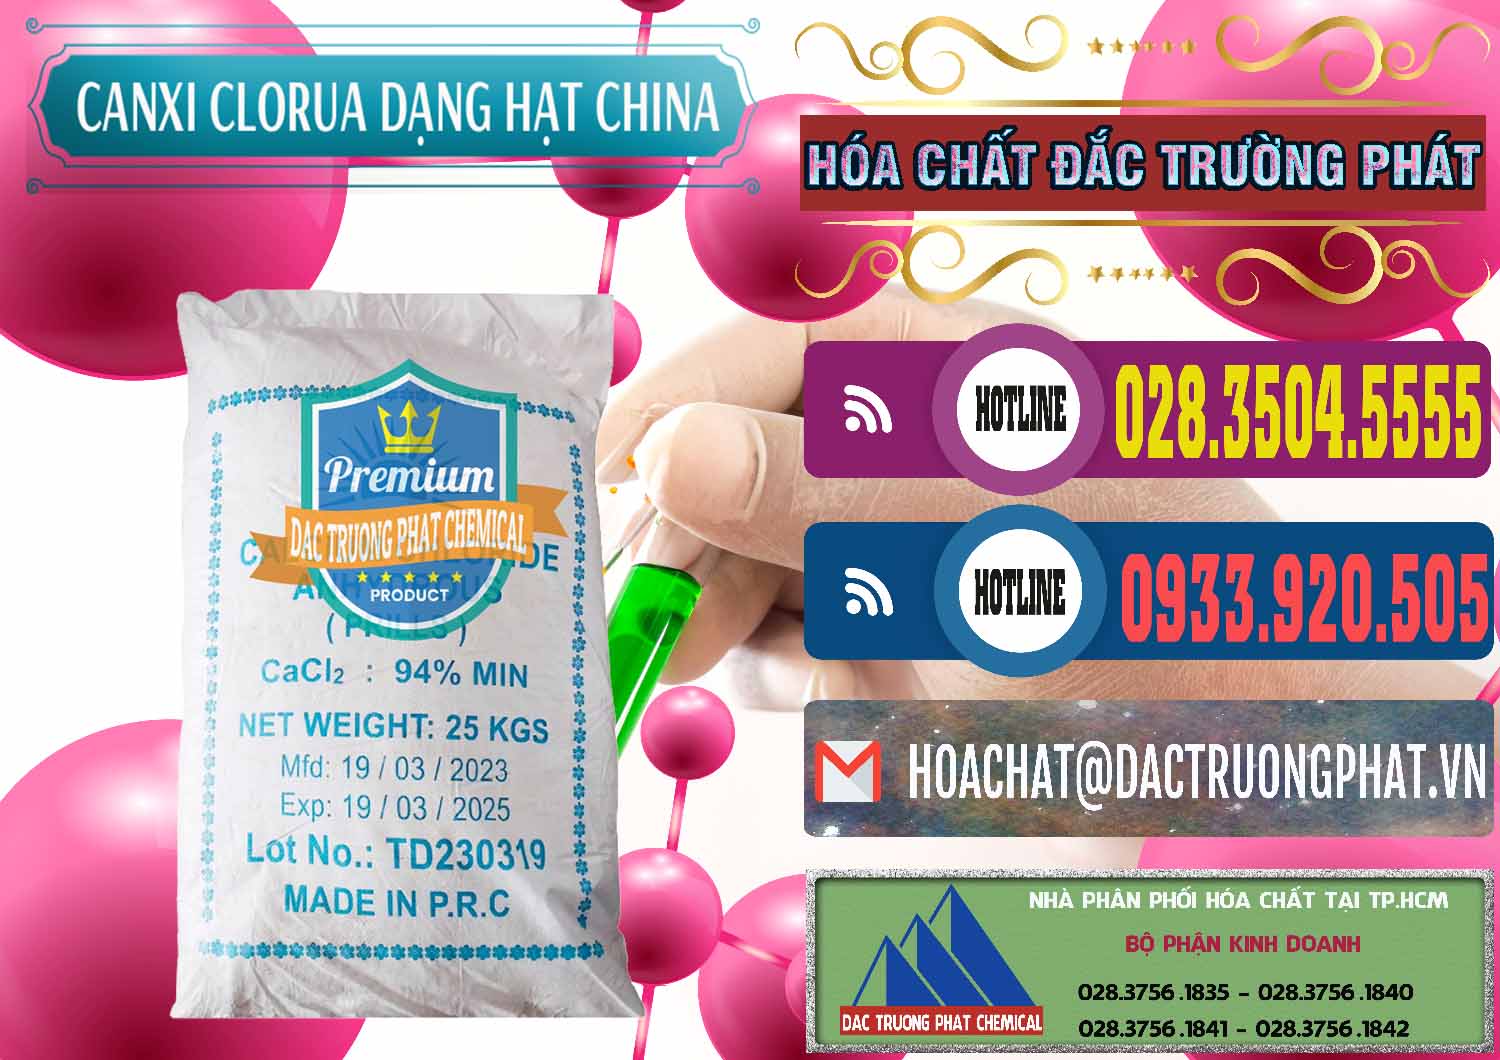 Cung ứng và bán CaCl2 – Canxi Clorua 94% Dạng Hạt Trung Quốc China - 0373 - Công ty cung cấp - bán hóa chất tại TP.HCM - muabanhoachat.com.vn